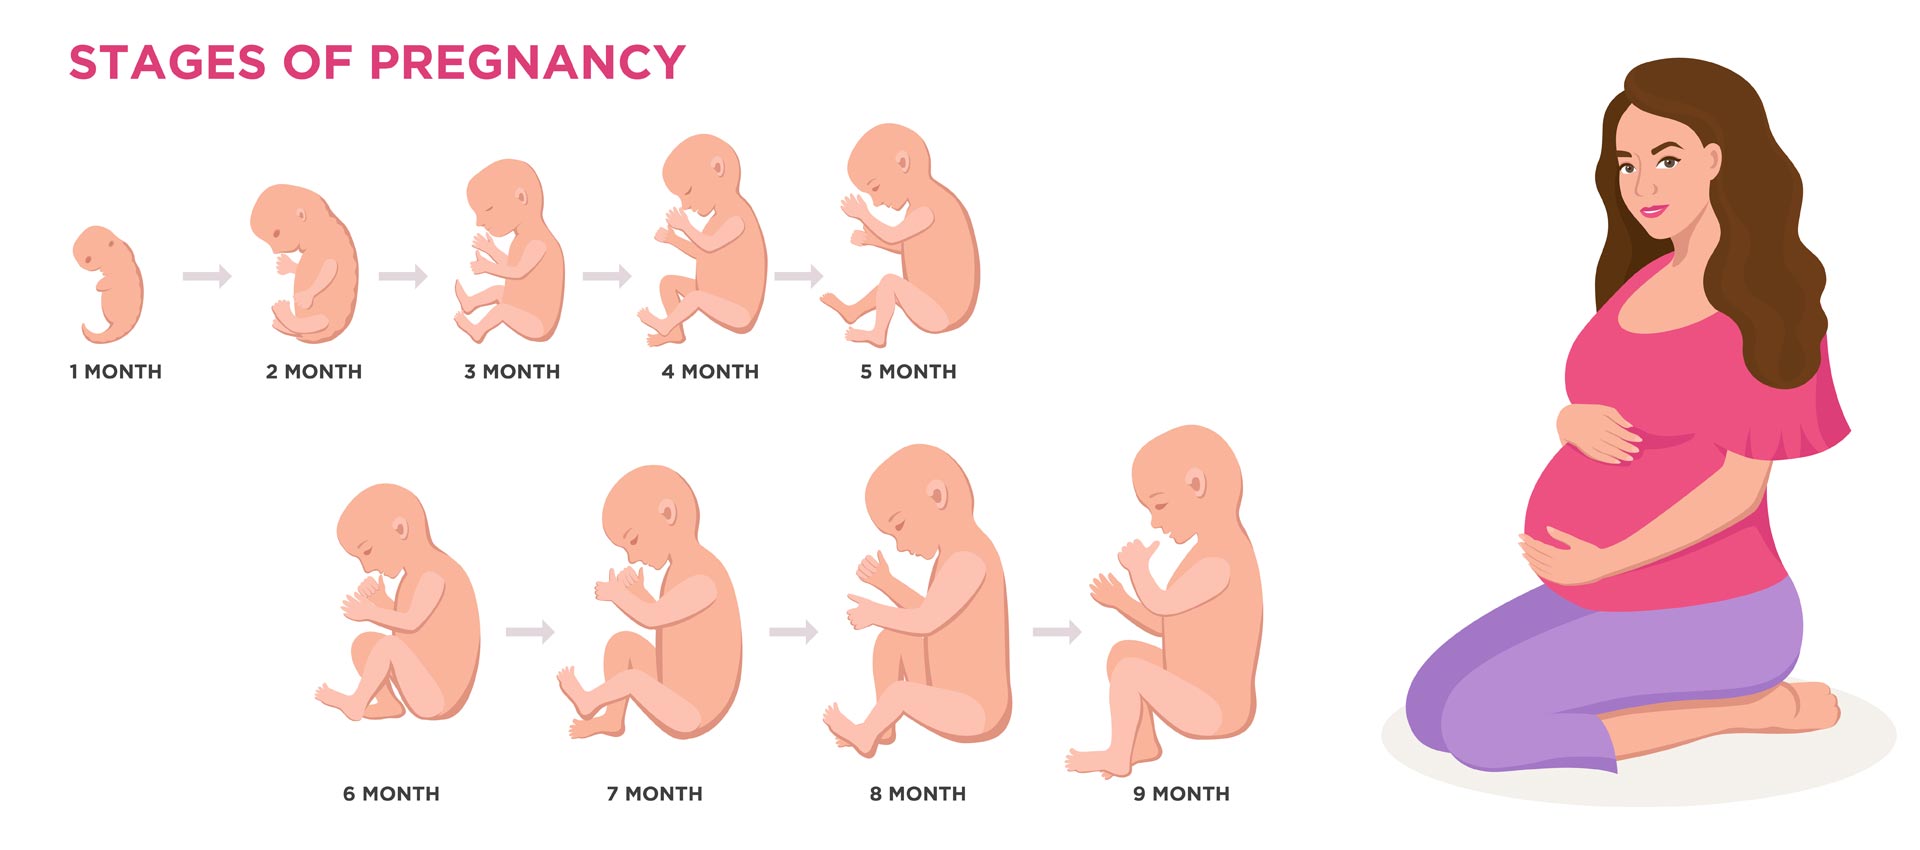 20-facts-about-fetal-development